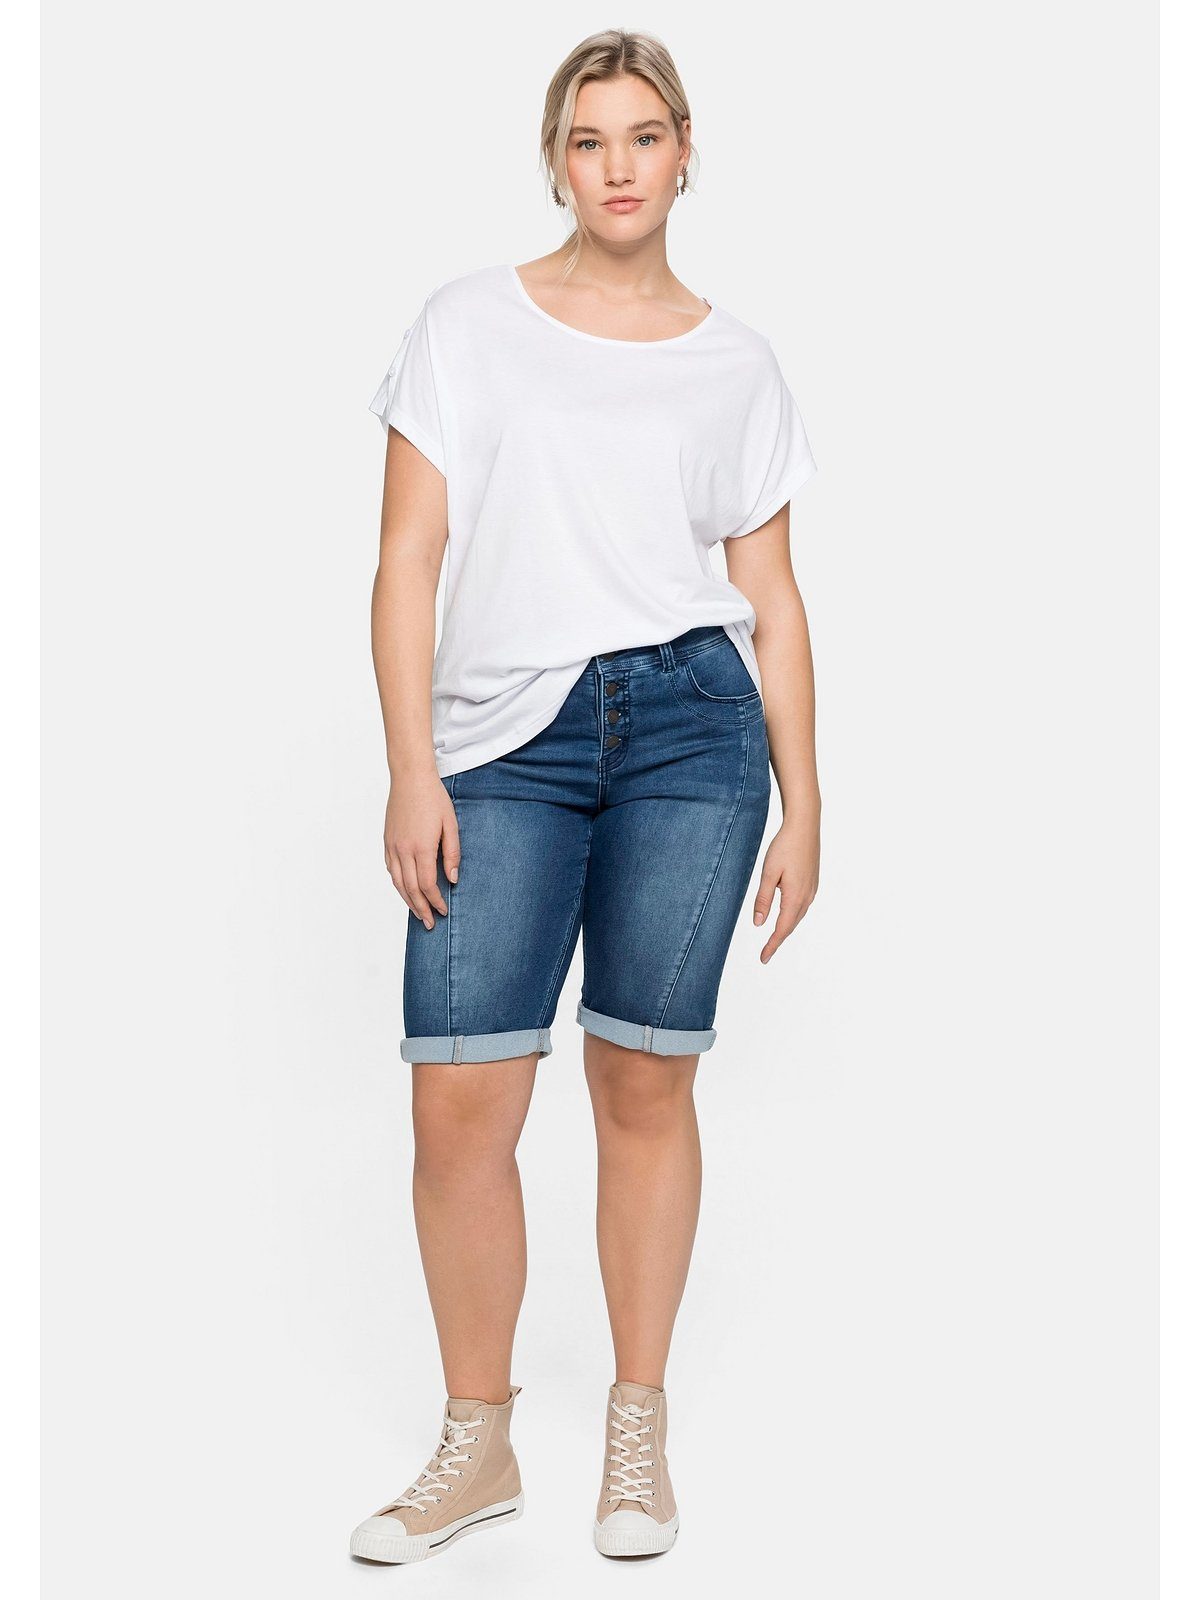 Sheego T-Shirt Schulterpartie, in Große A-Linie leichter Größen offener mit weiß